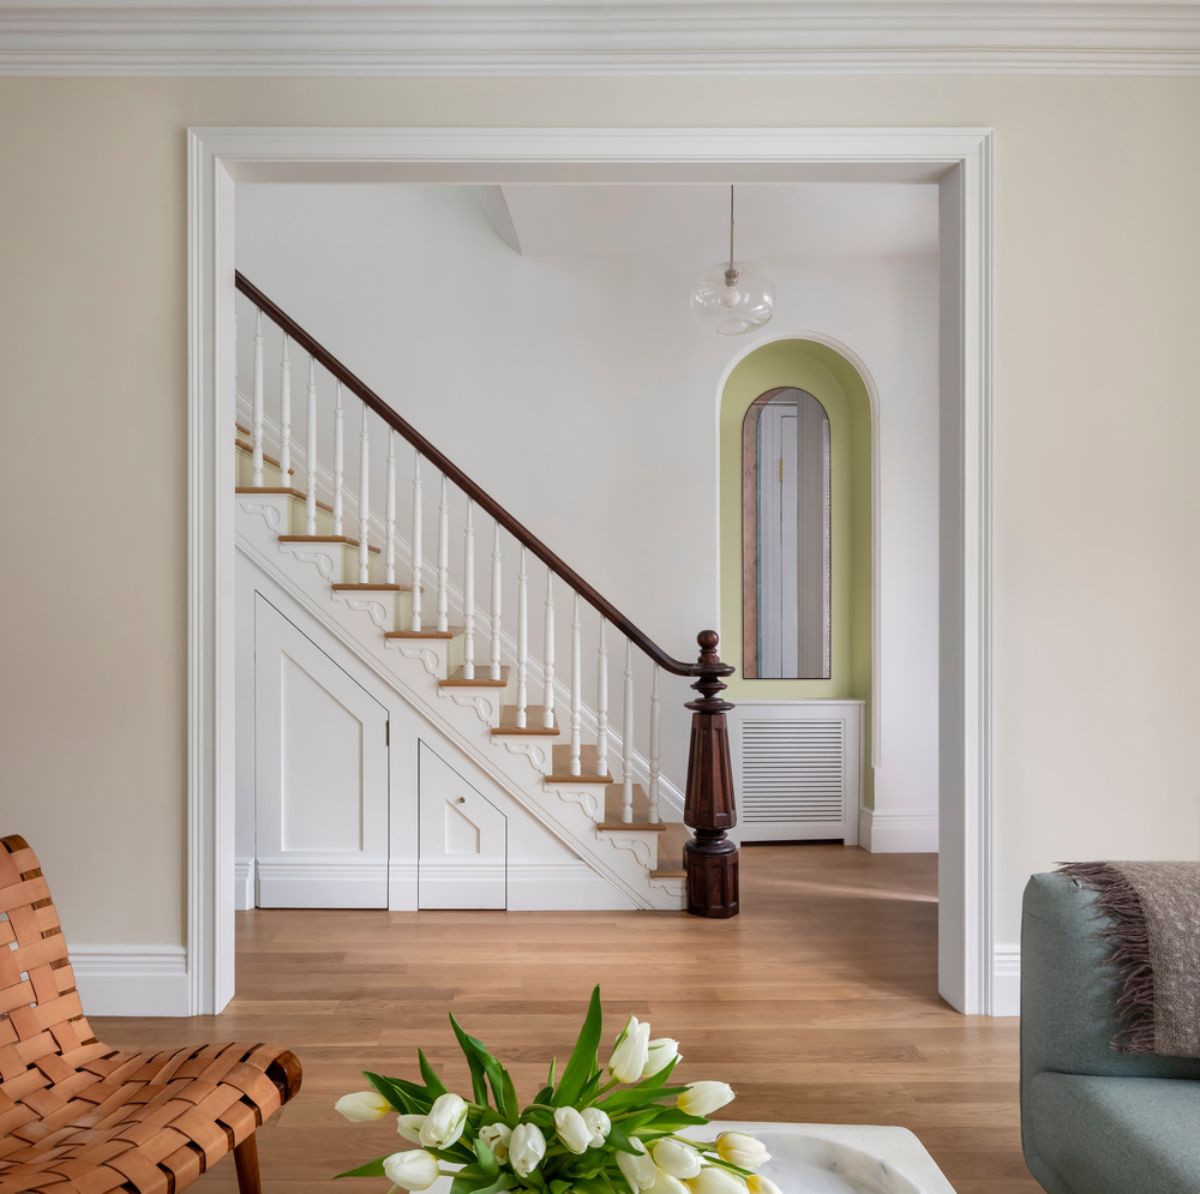 一个与楼梯相连的客厅的开放入口，空间由美丽的客厅地板突出显示。